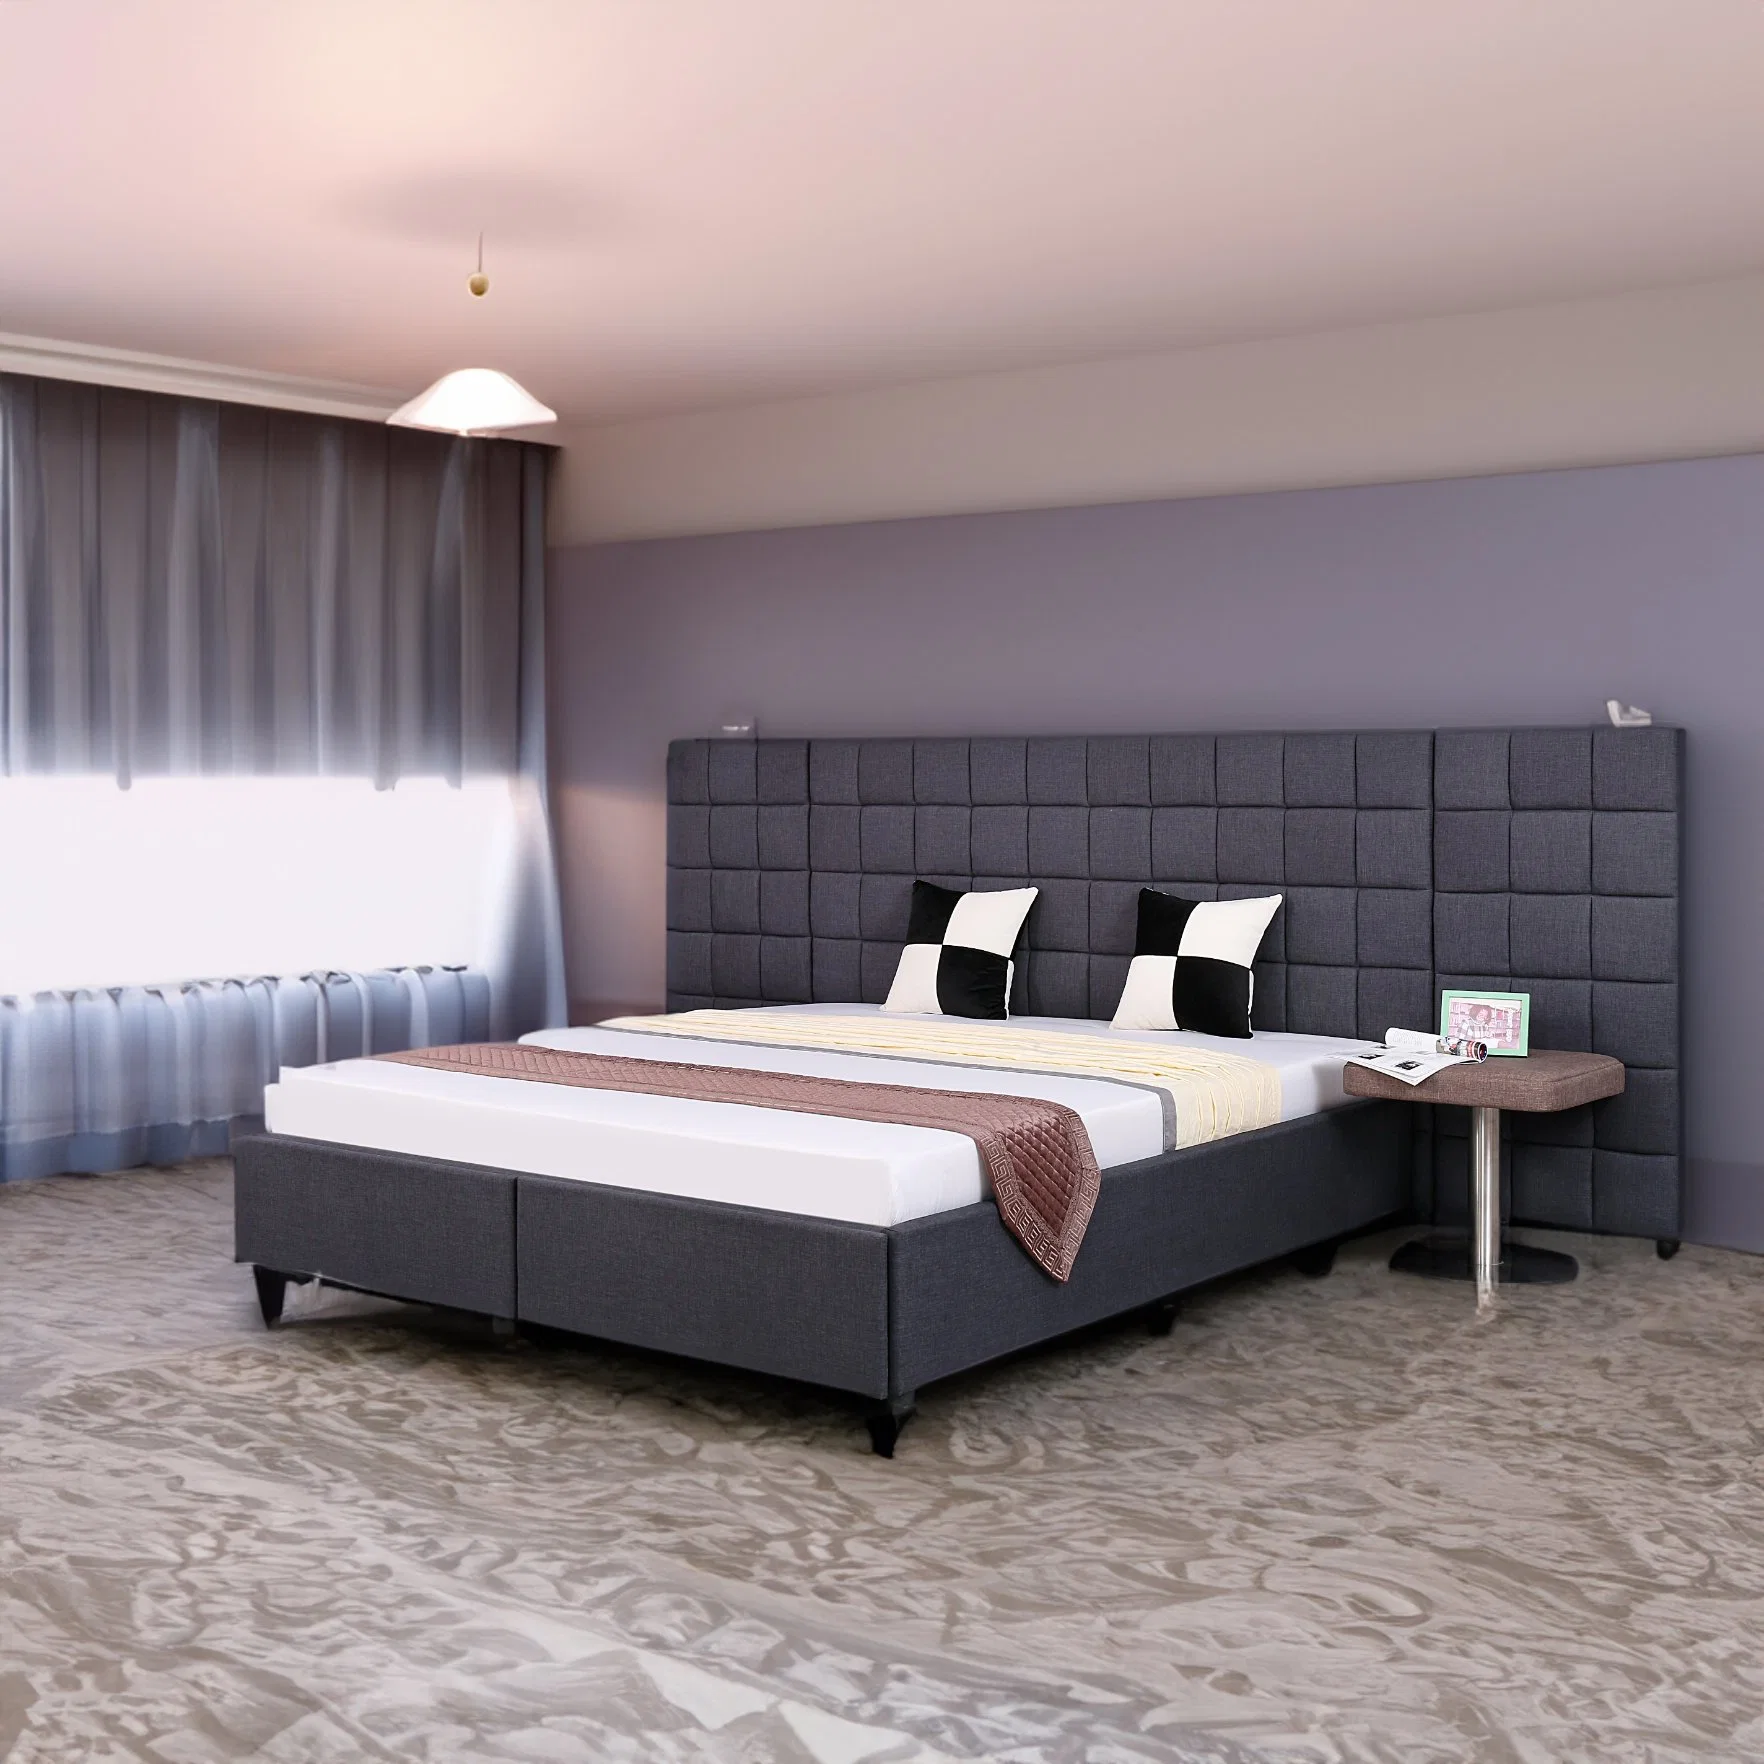 Huayang Modern Hot Sale Design Home Furniture Bedroom Bed